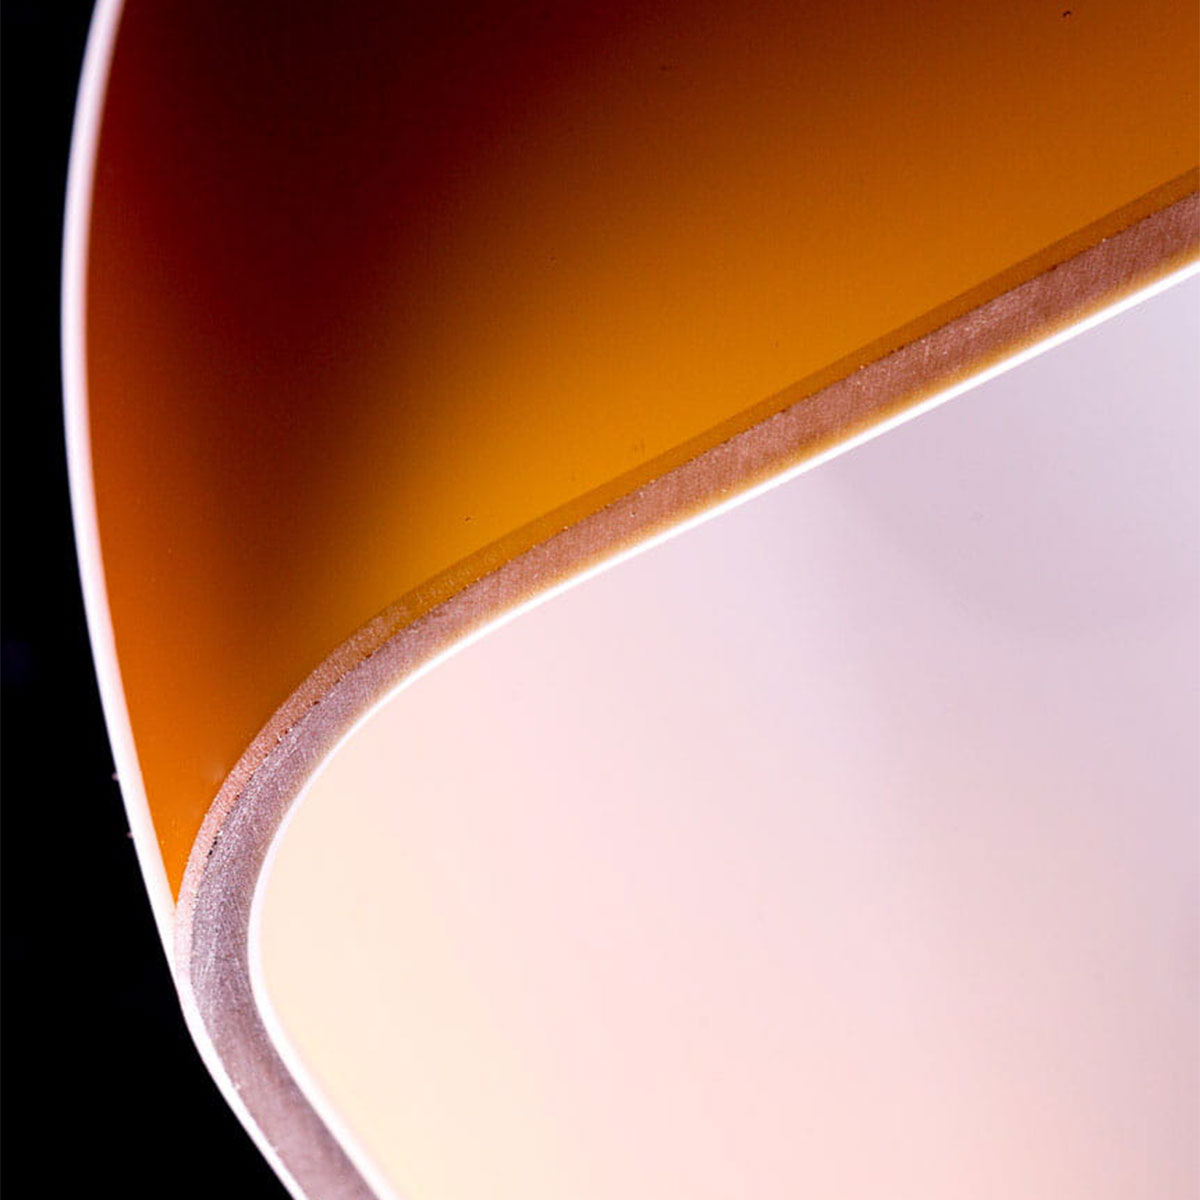 Klassische Schreibtischlampe: Bankerlampe mit rundem Sockel: Vierschichtiges Opalglas sorgt für eine besonders schönes Licht